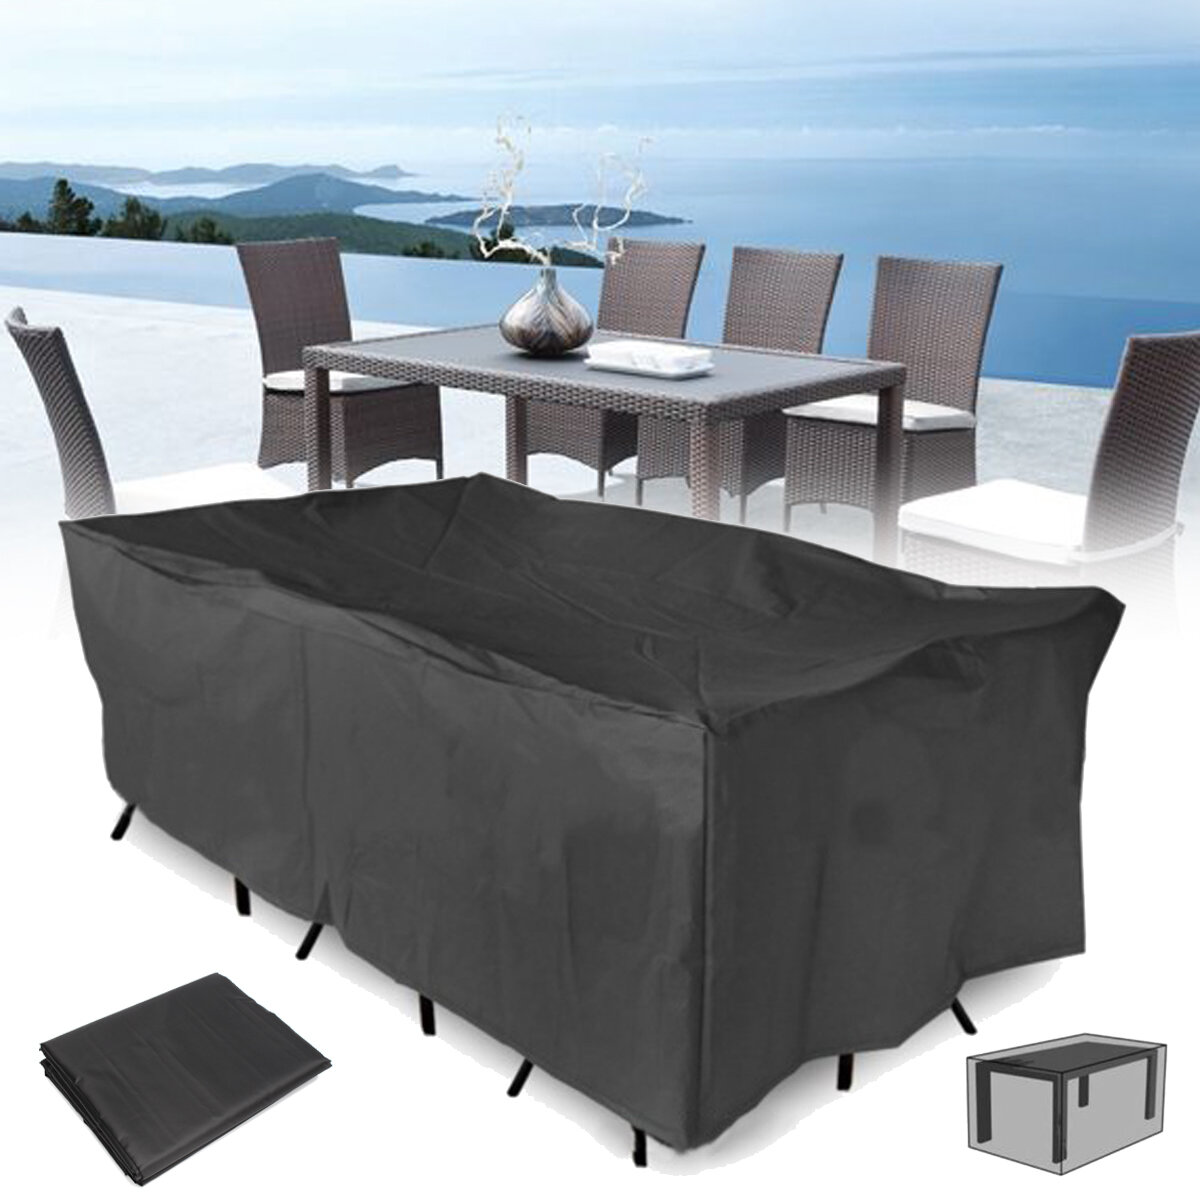 320x220x70CM al aire libre muebles de patio jardín Impermeable cubierta de polvo silla de mesa sol refugio